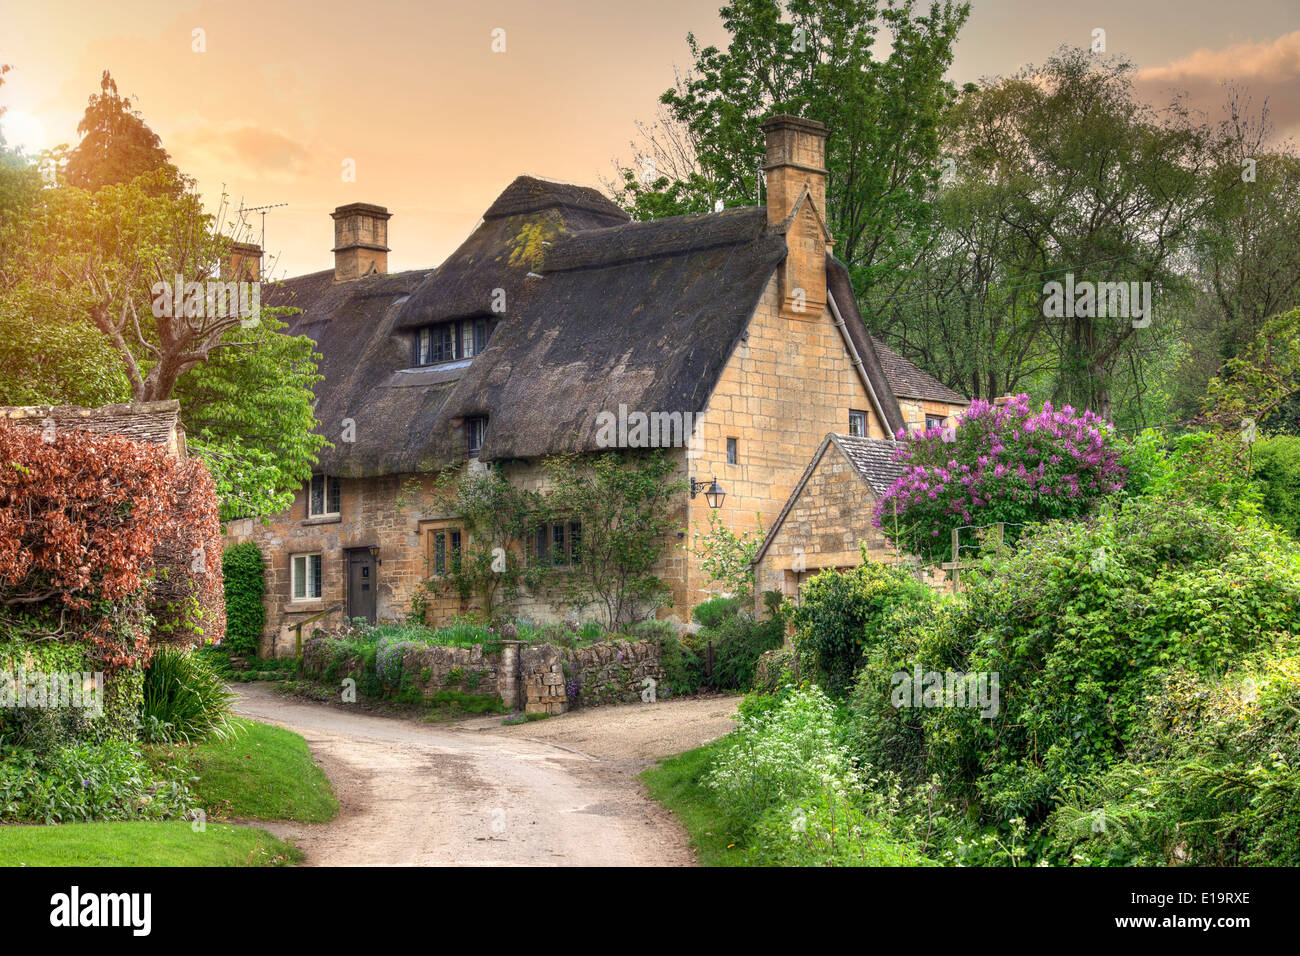 Jolie Cotswold cottage de chaume dans le village de Stanton, Gloucestershire, Angleterre. Banque D'Images